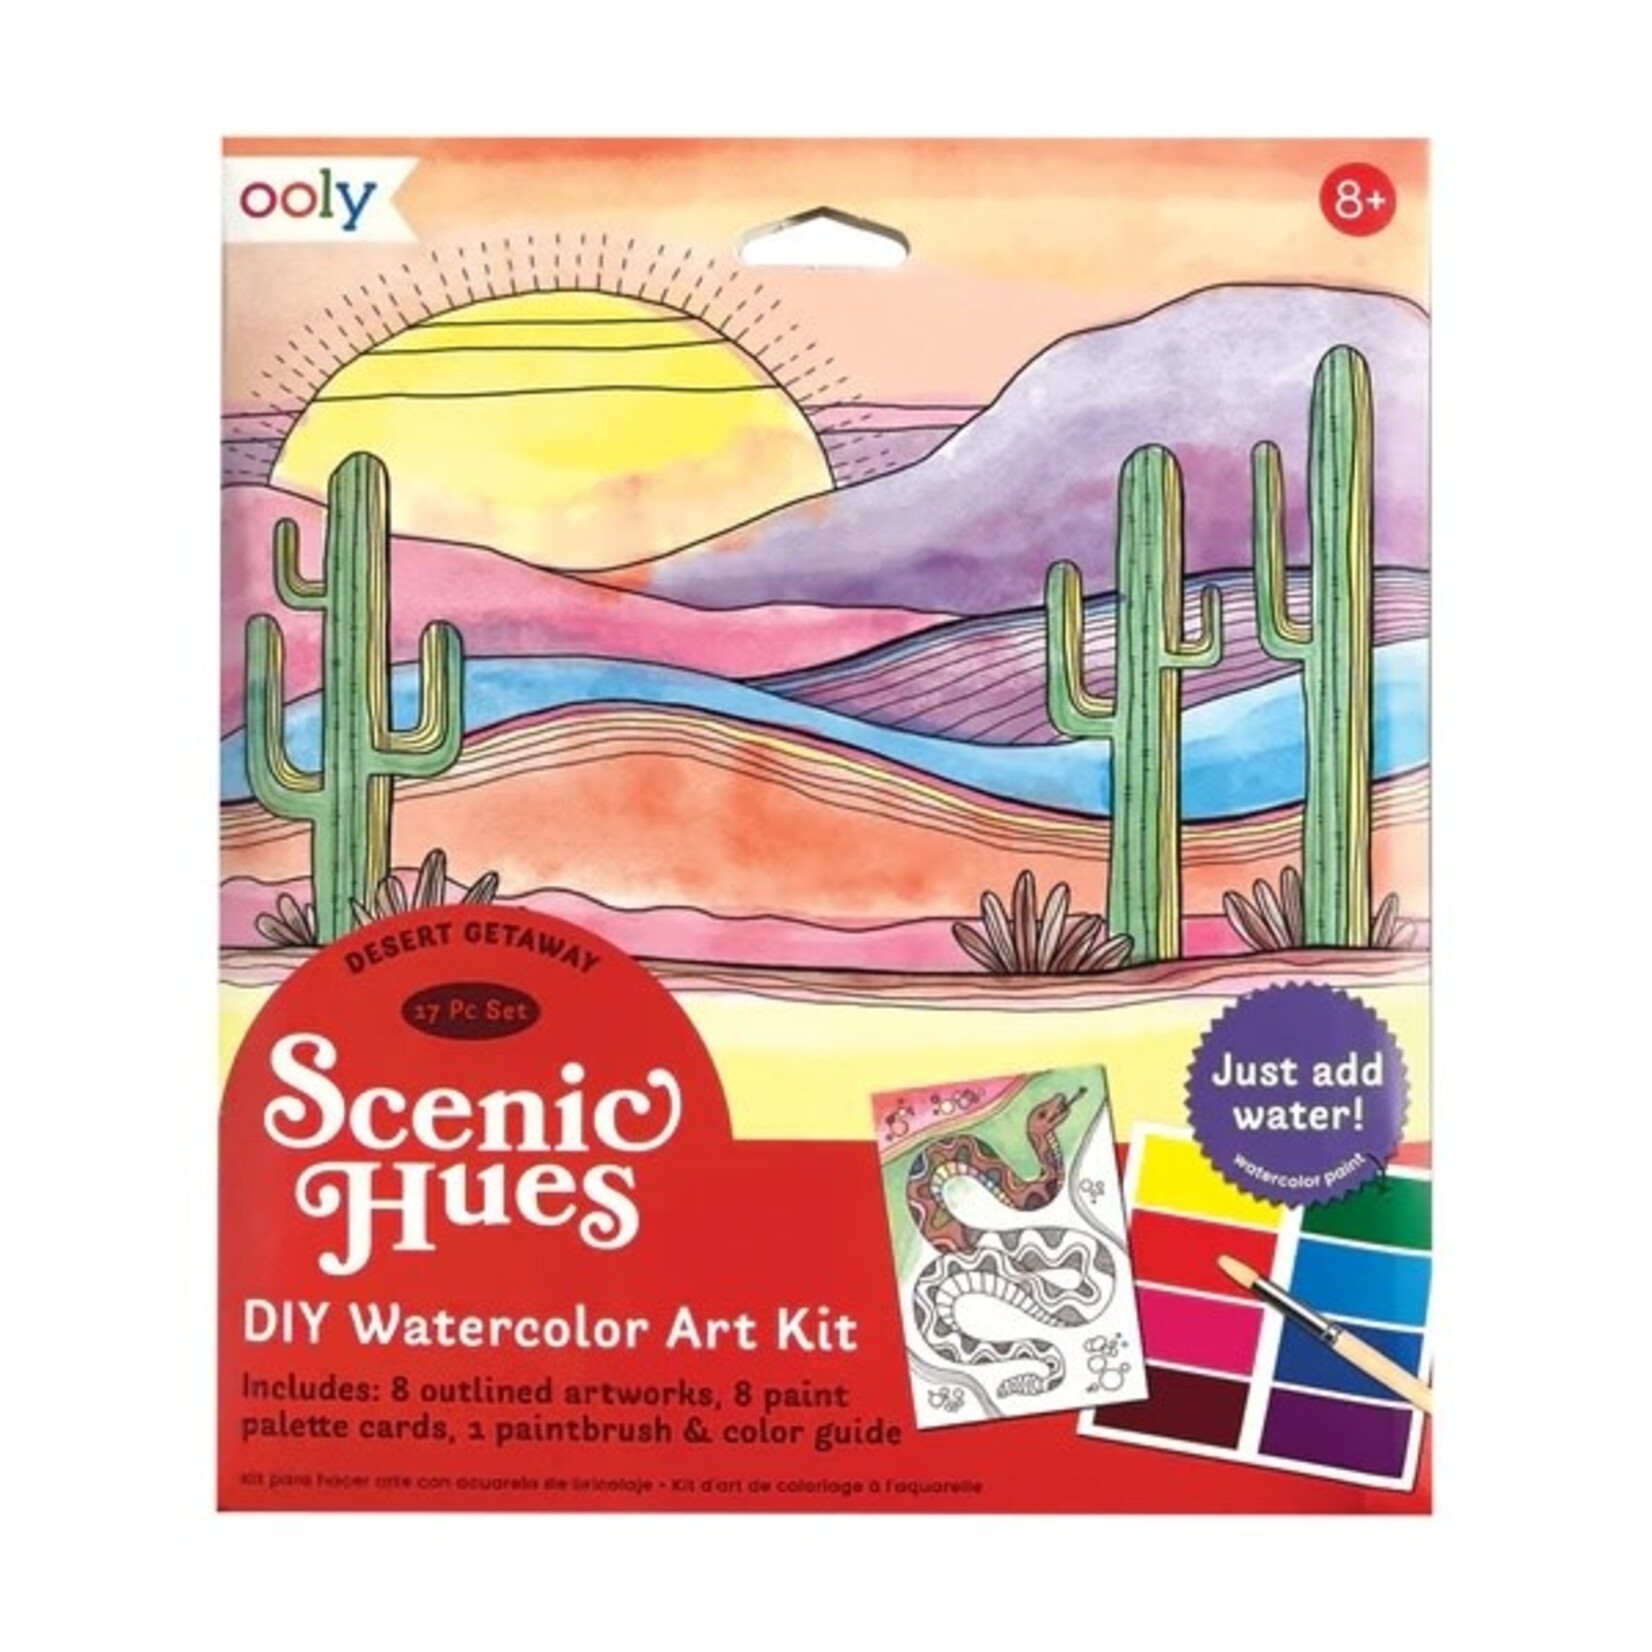 Ooly Scenic Hues DIY Watercolor Art Kit: Desert Getaway